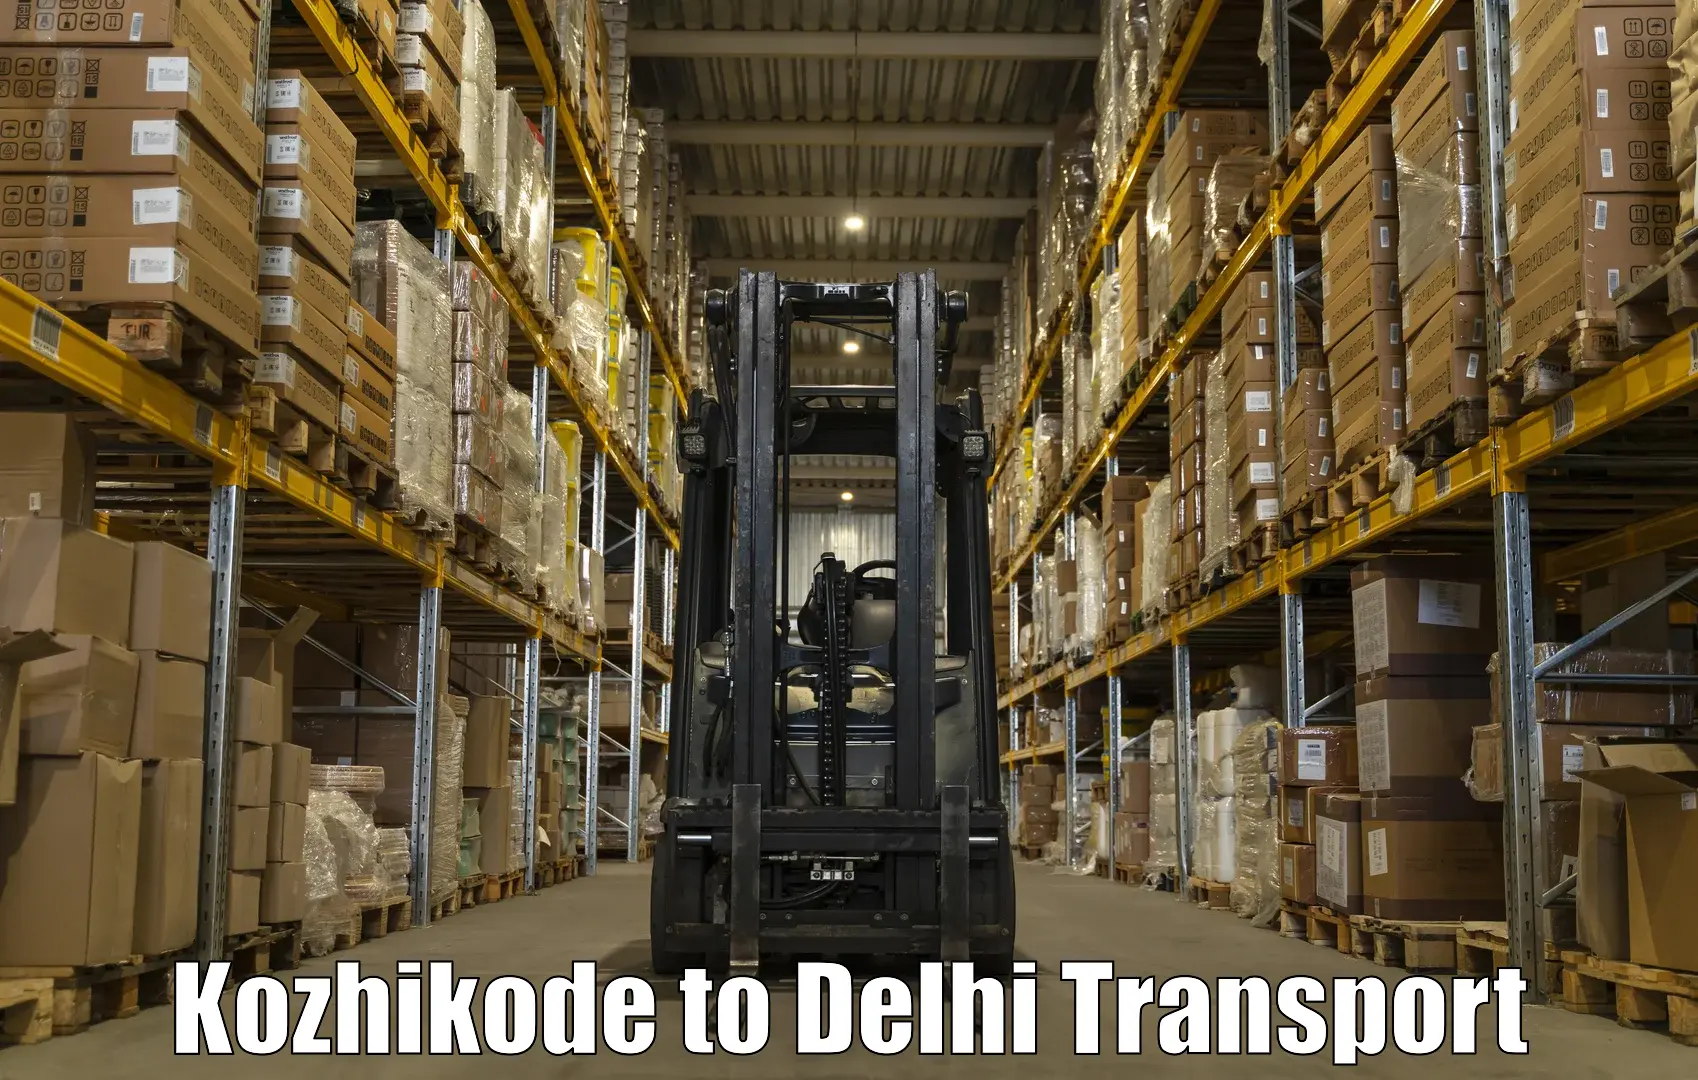 Commercial transport service Kozhikode to Ashok Vihar